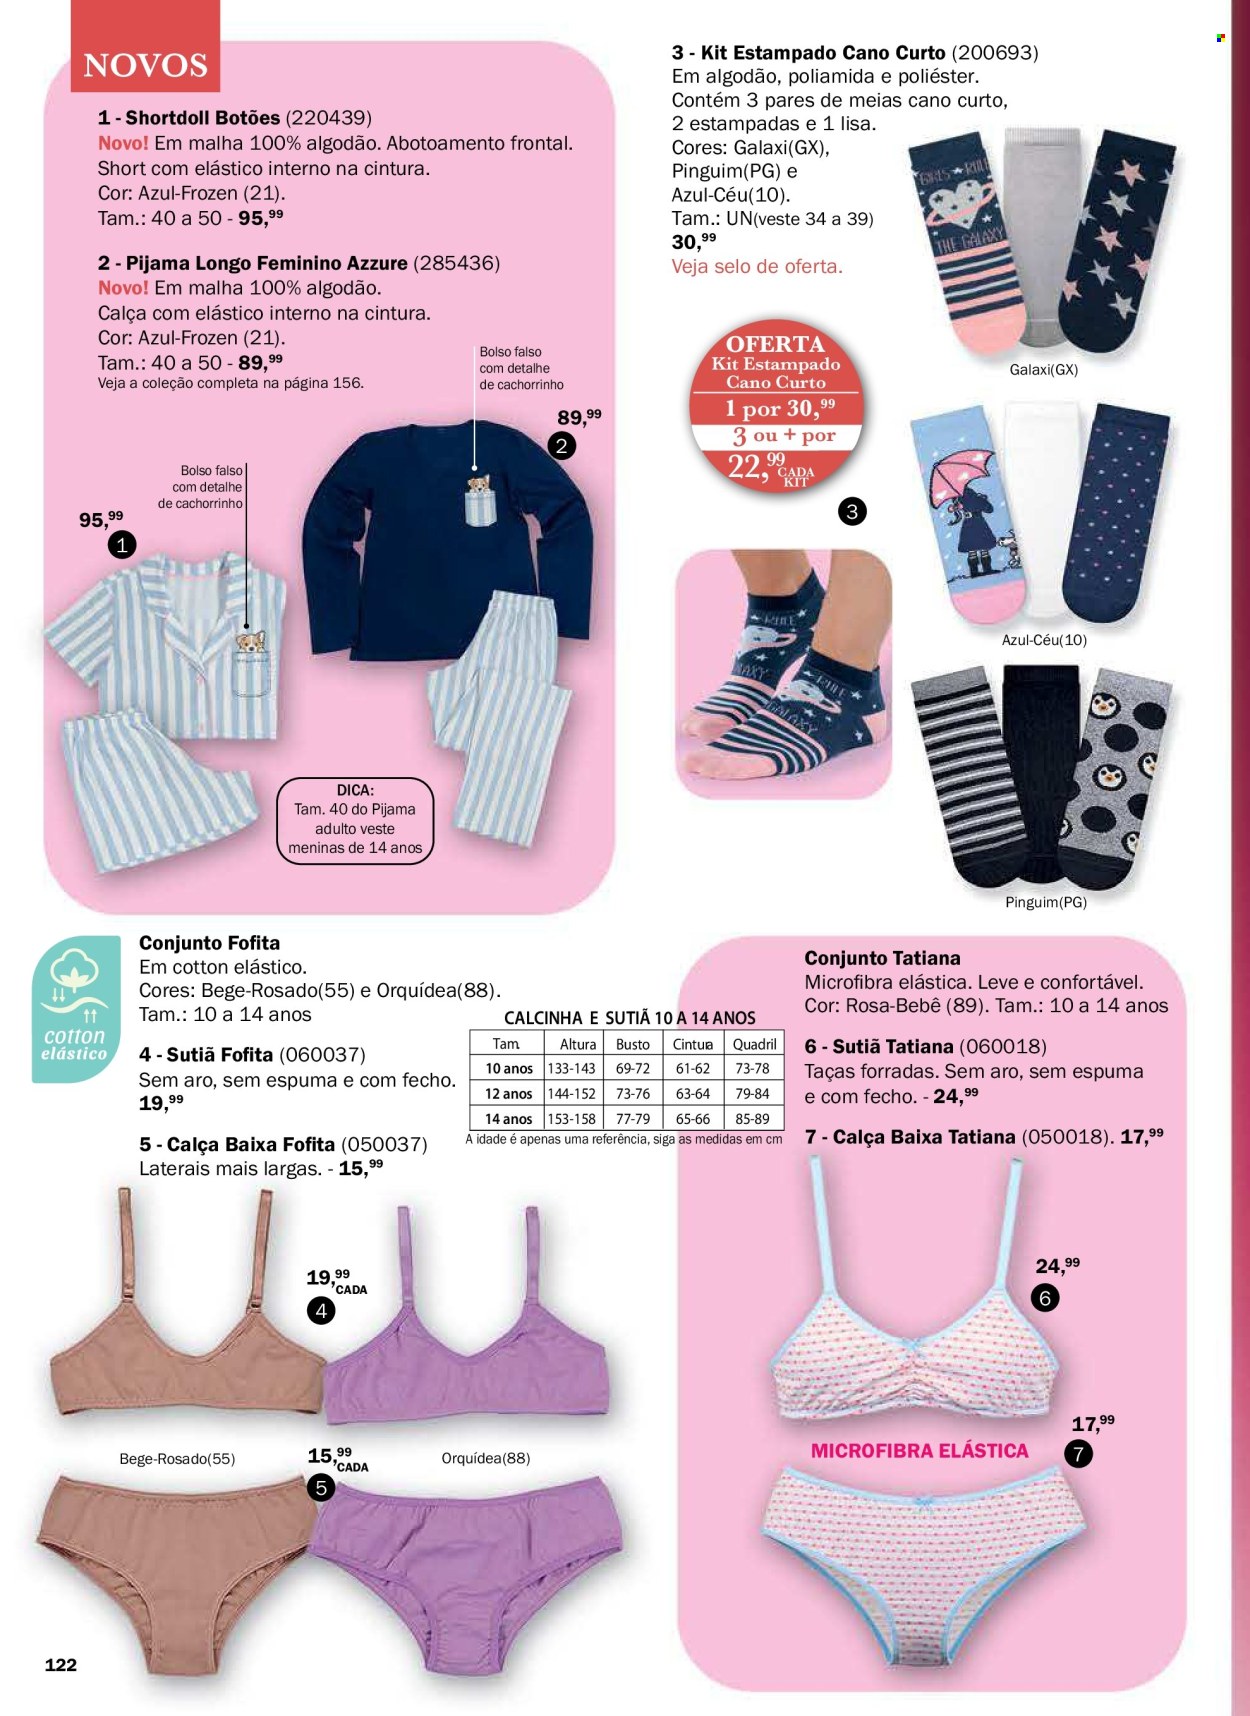 thumbnail - Folheto DeMillus - Produtos em promoção - Frozen, calça, shortdoll, cuecas, sutiã, pijama, meias. Página 122.